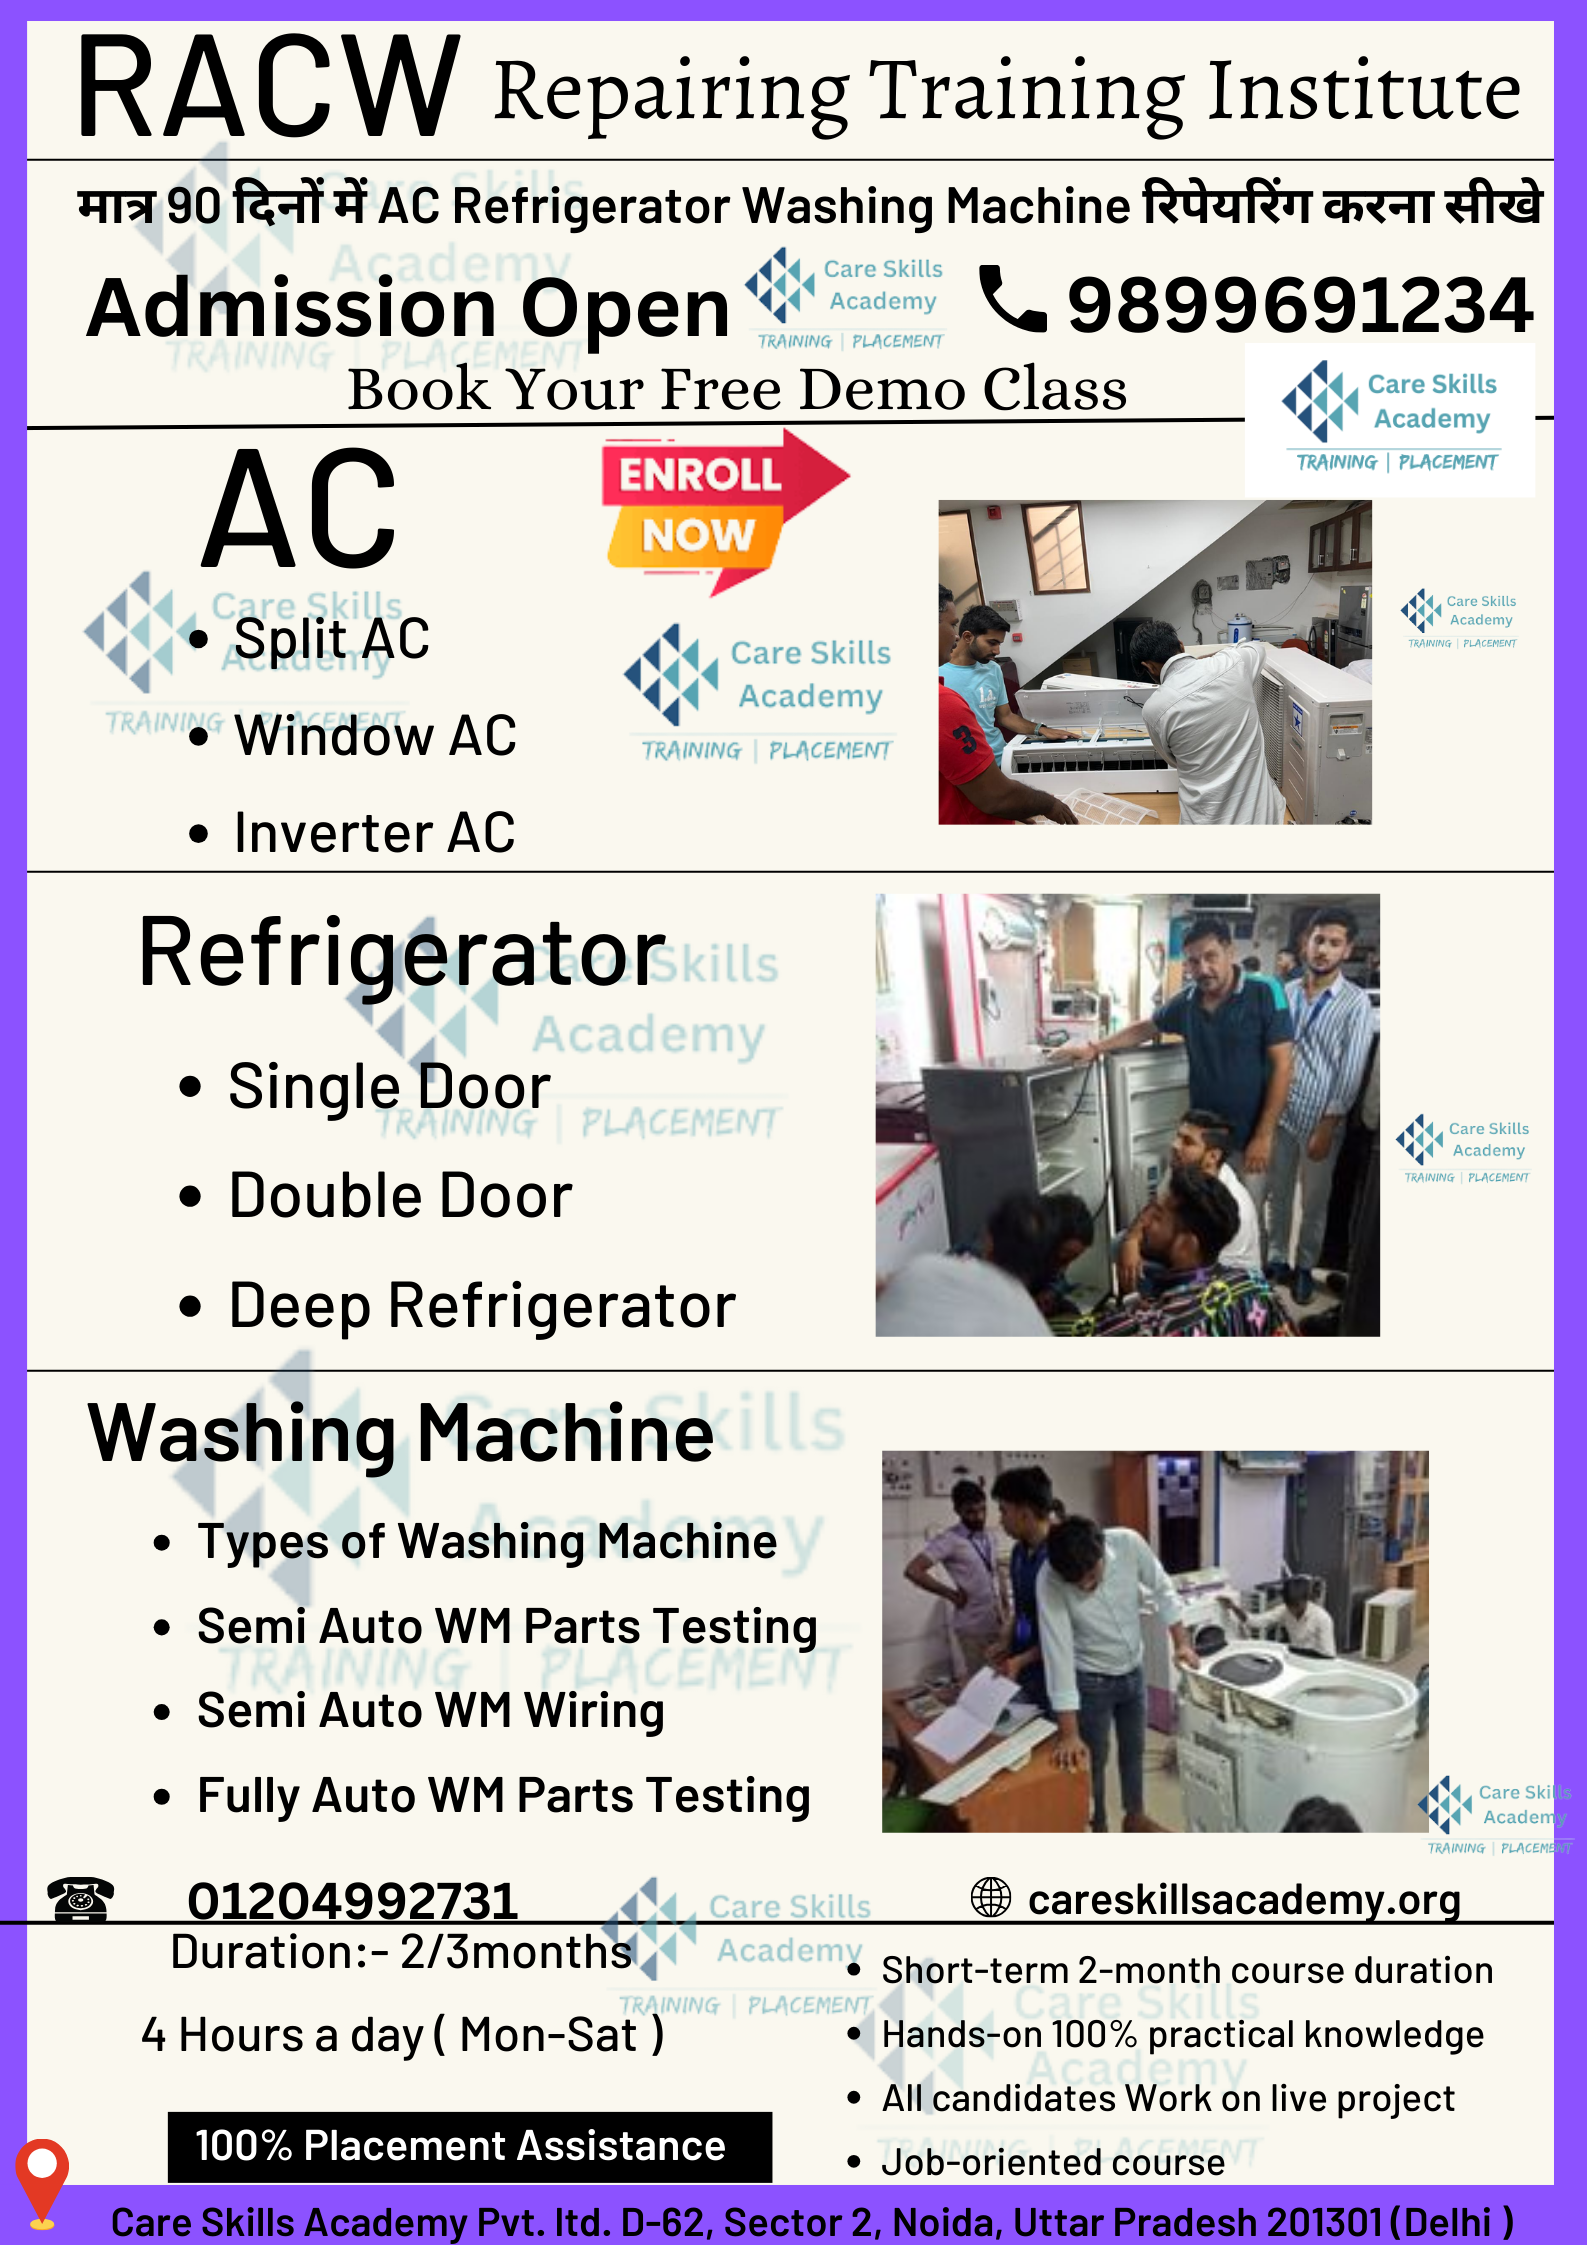 AC Refrigerator Washing Machine Repairing Course || RACW Repairing Course || Home Appliance Repair Course